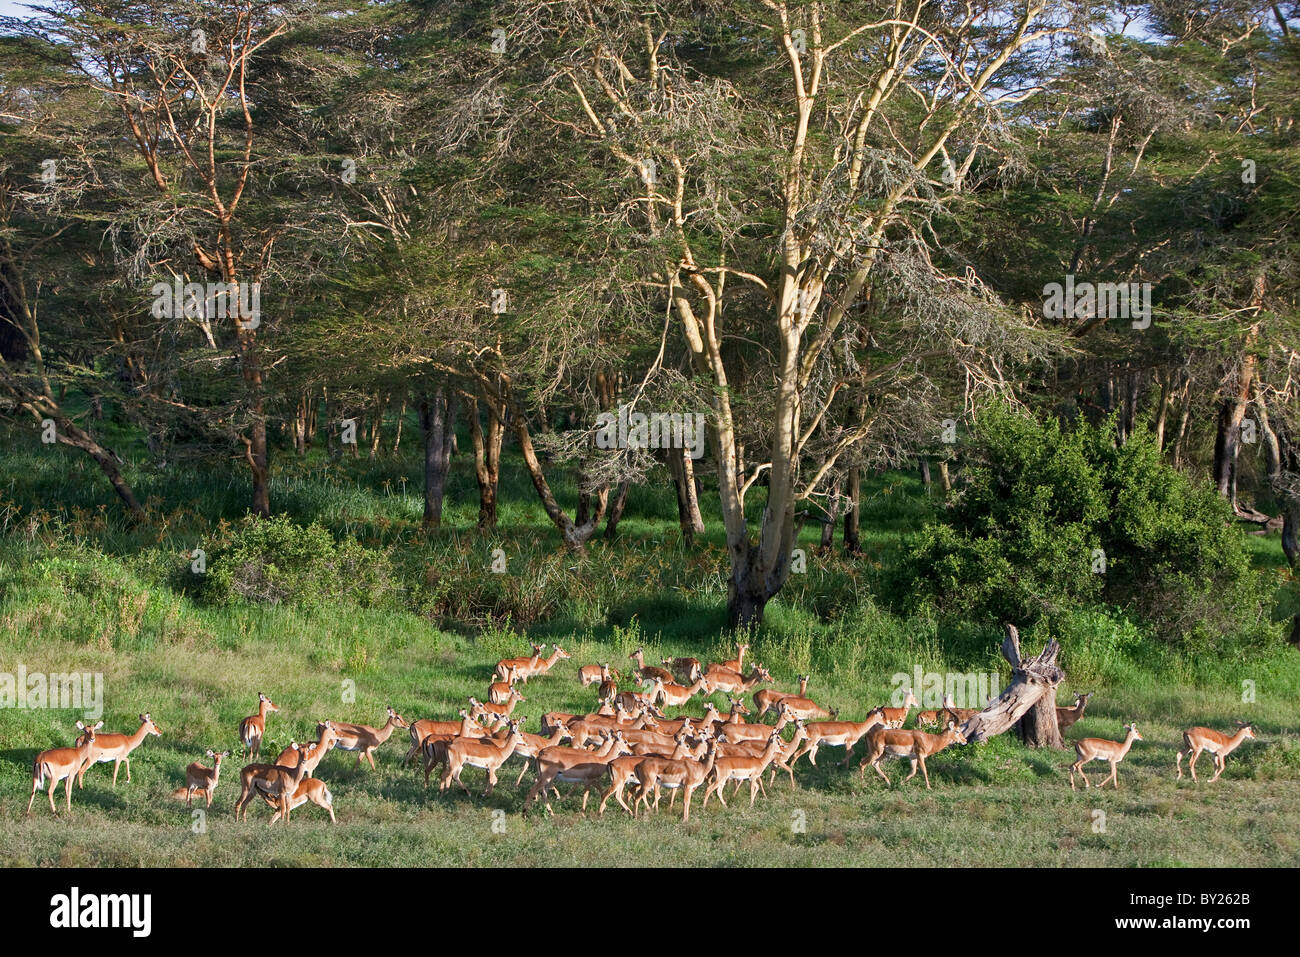 Un troupeau d'impalas broutent près de la fièvre à écorce jaune massif d'arbres, d'un grand acacia qui pousse en sol humide. Mweiga, Solio, Banque D'Images